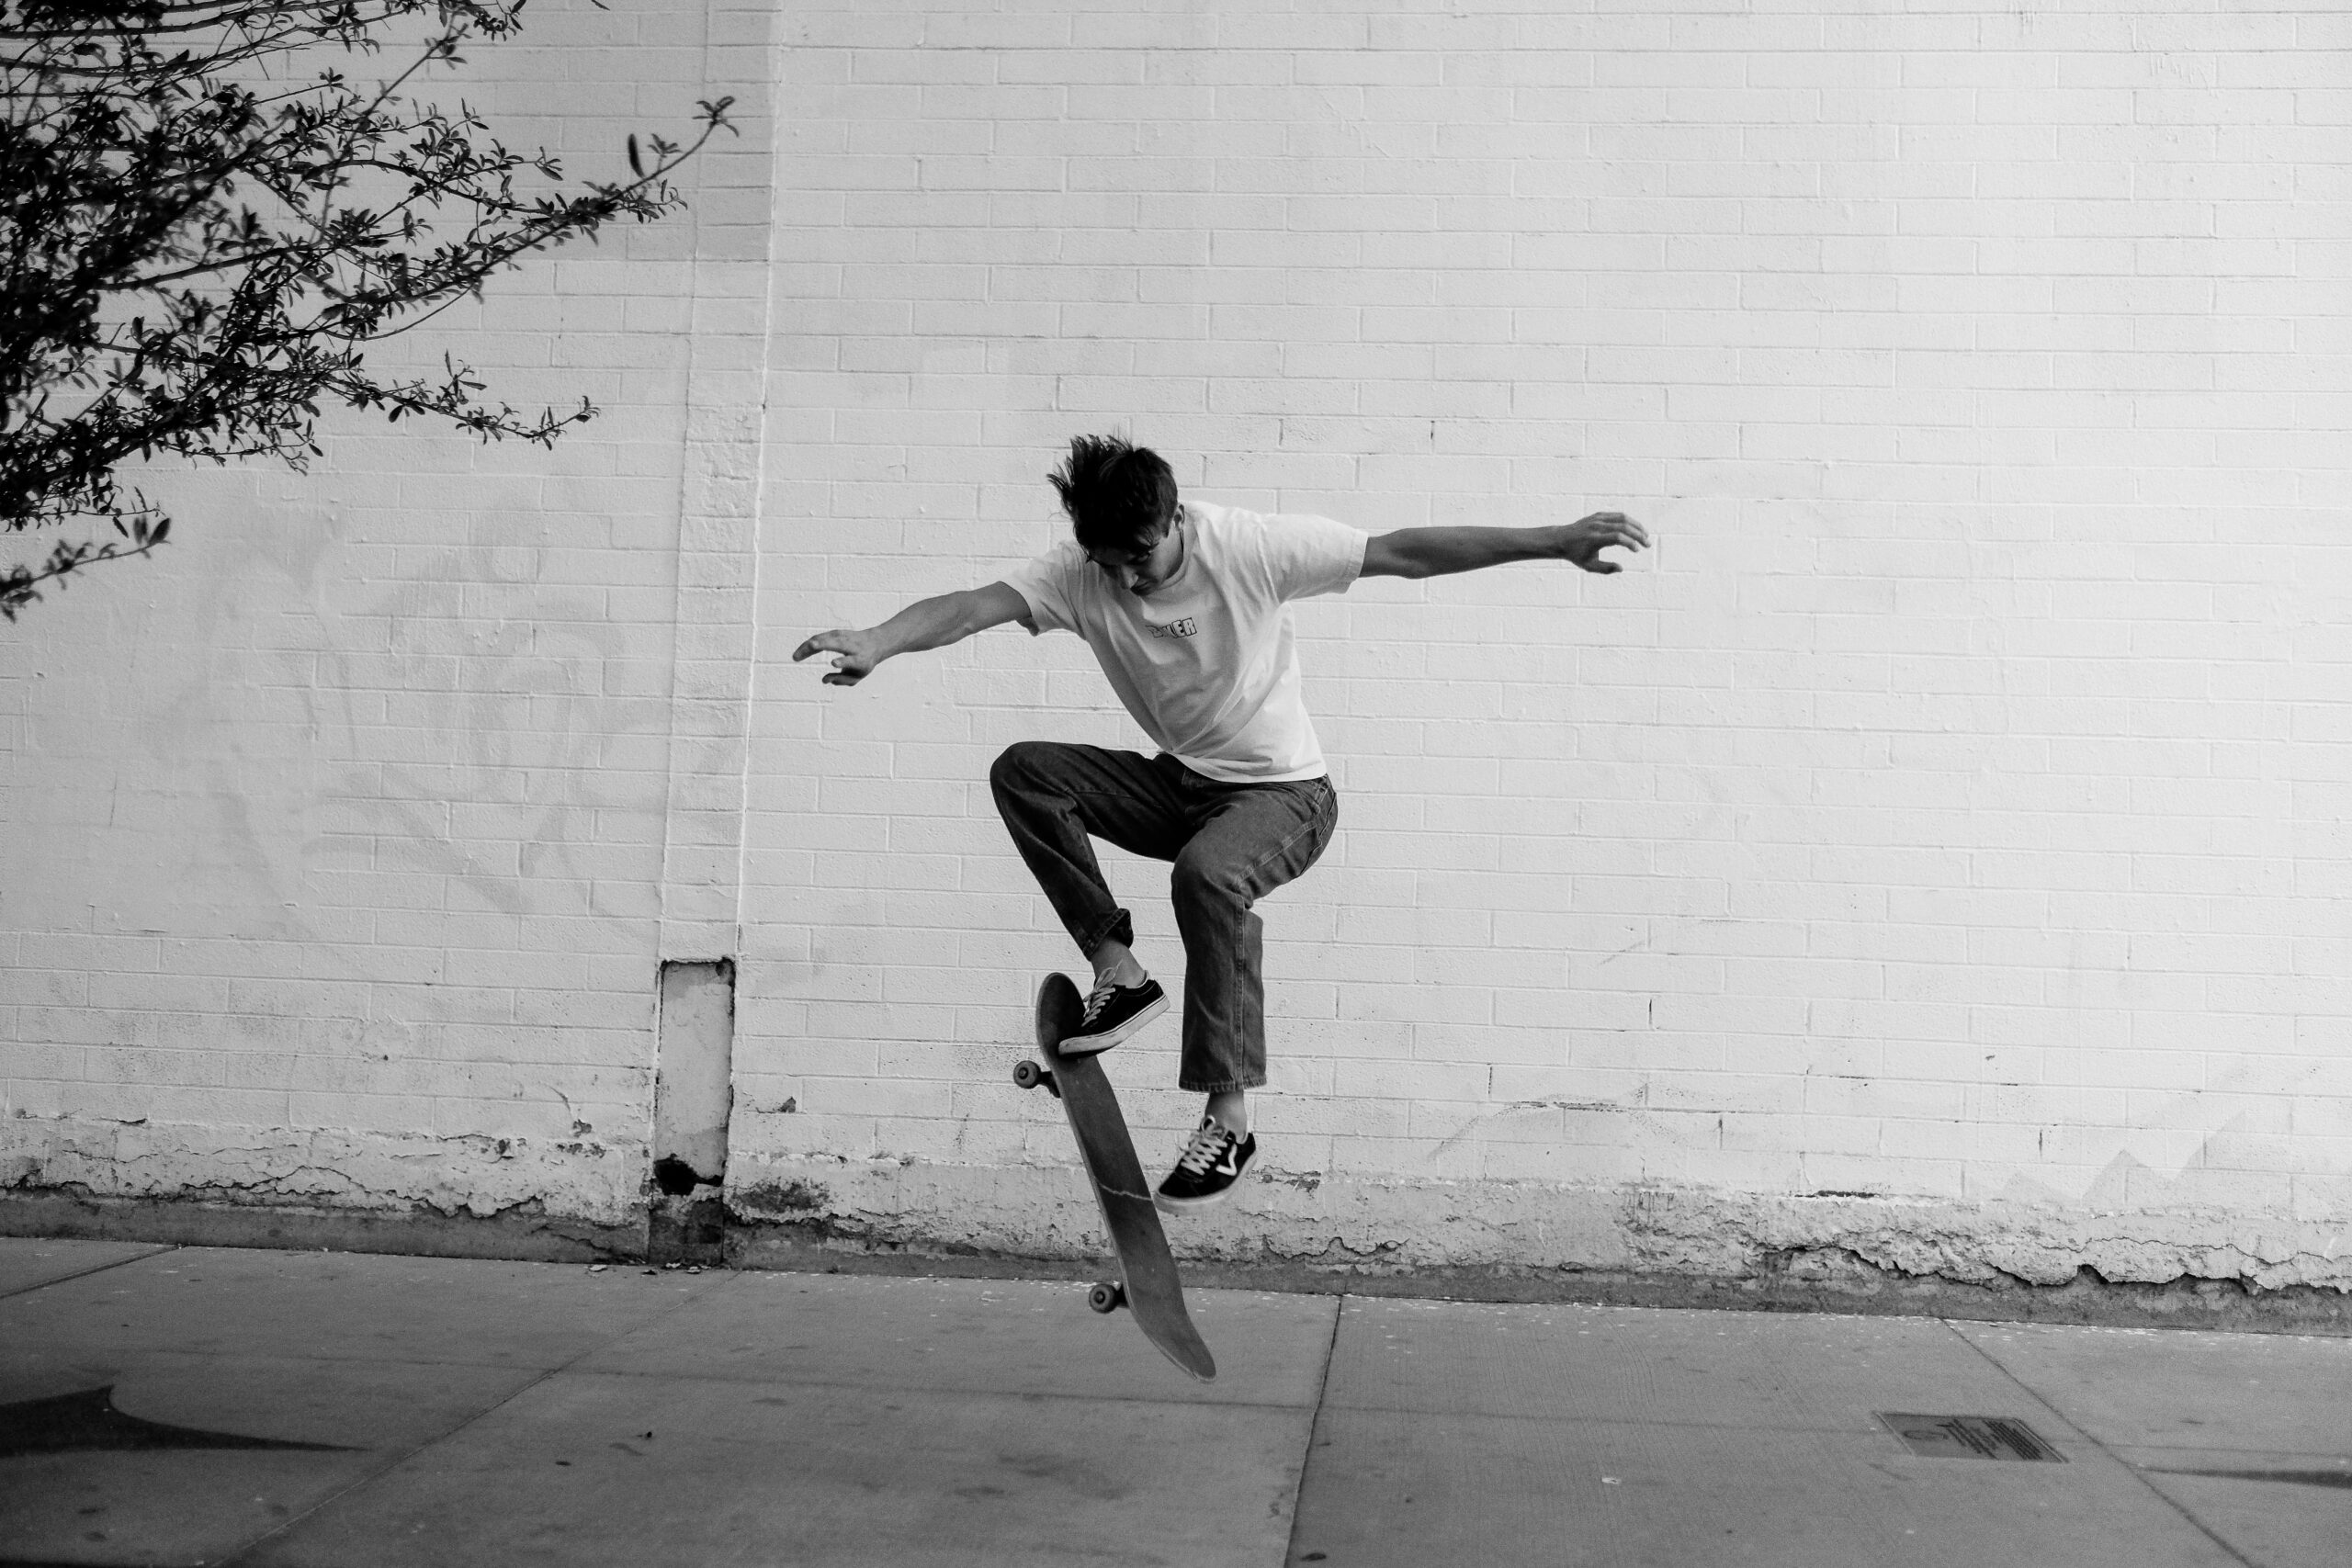 How Do I Safely Practice Skateboard Handstand Tricks?